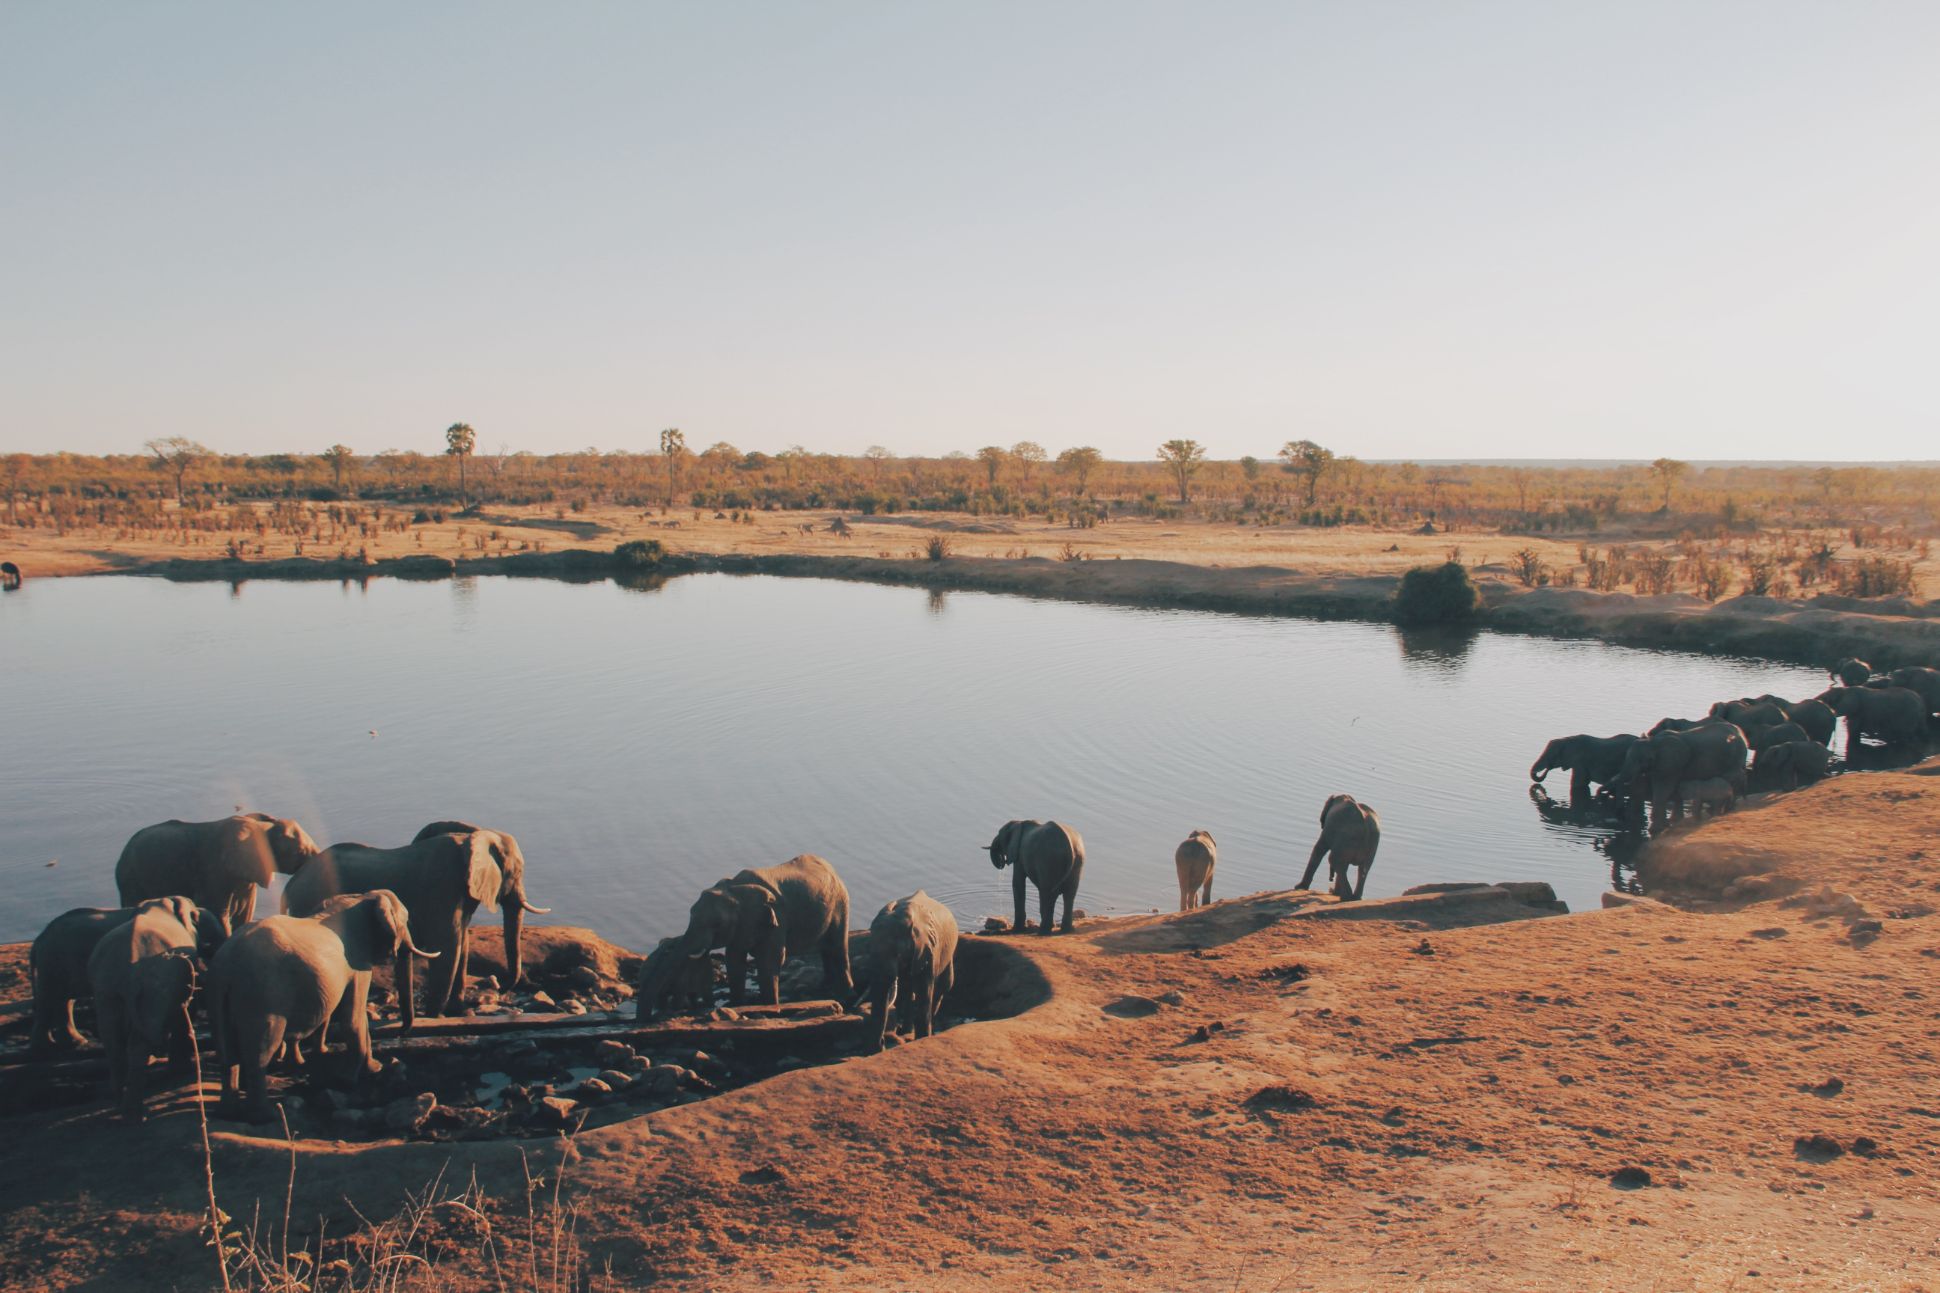 Elephants at Hwange National Park